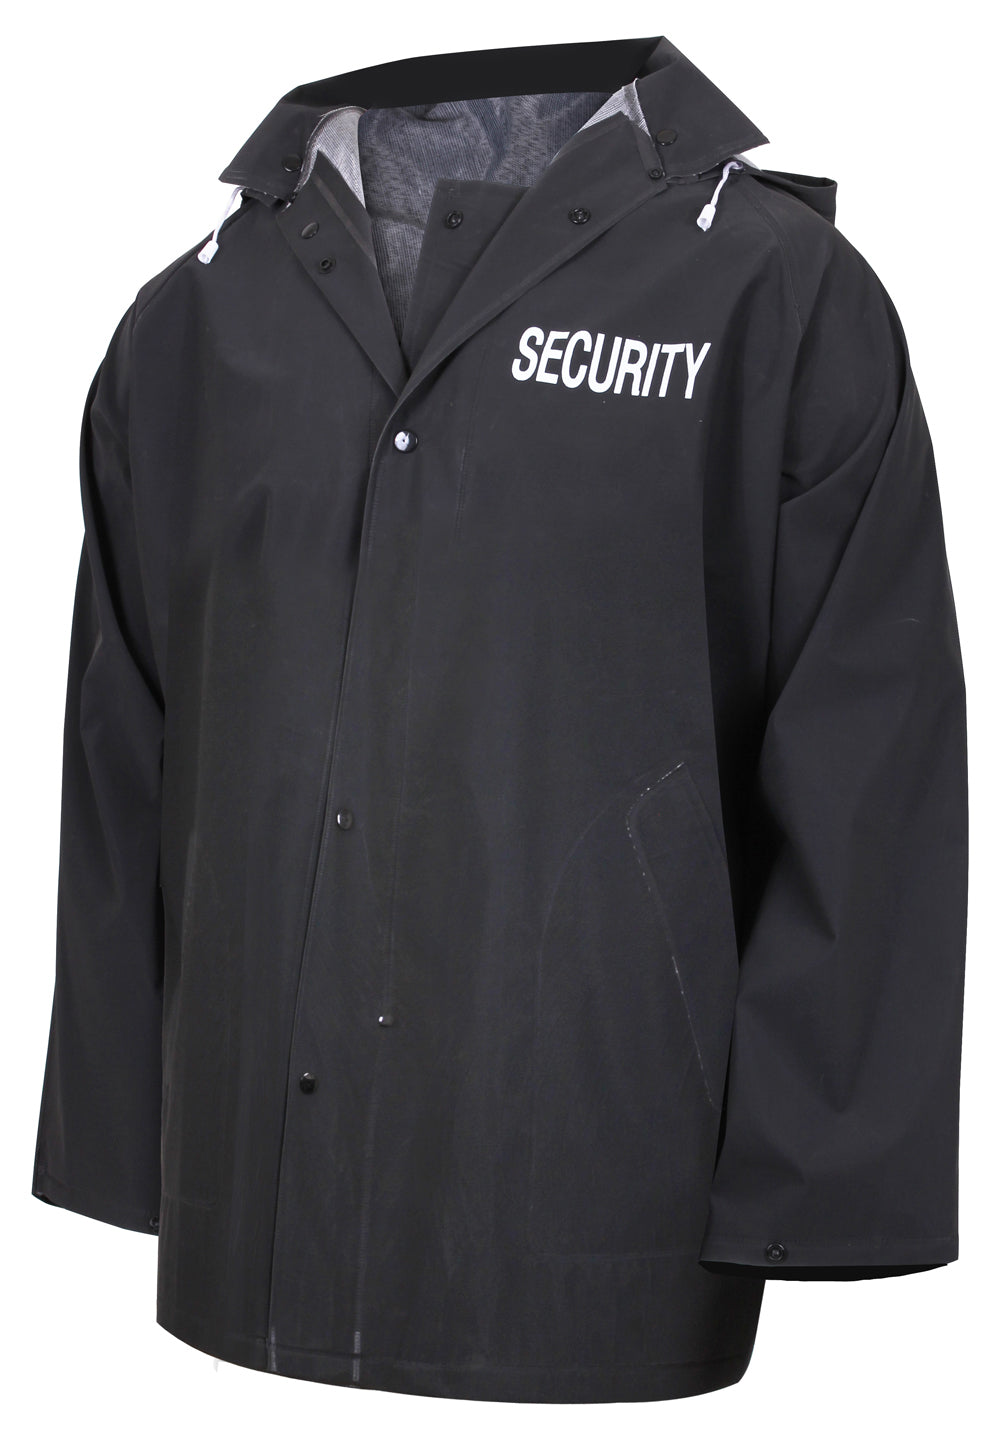 Rothco Security Rain Jacket - Tactical Choice Plus